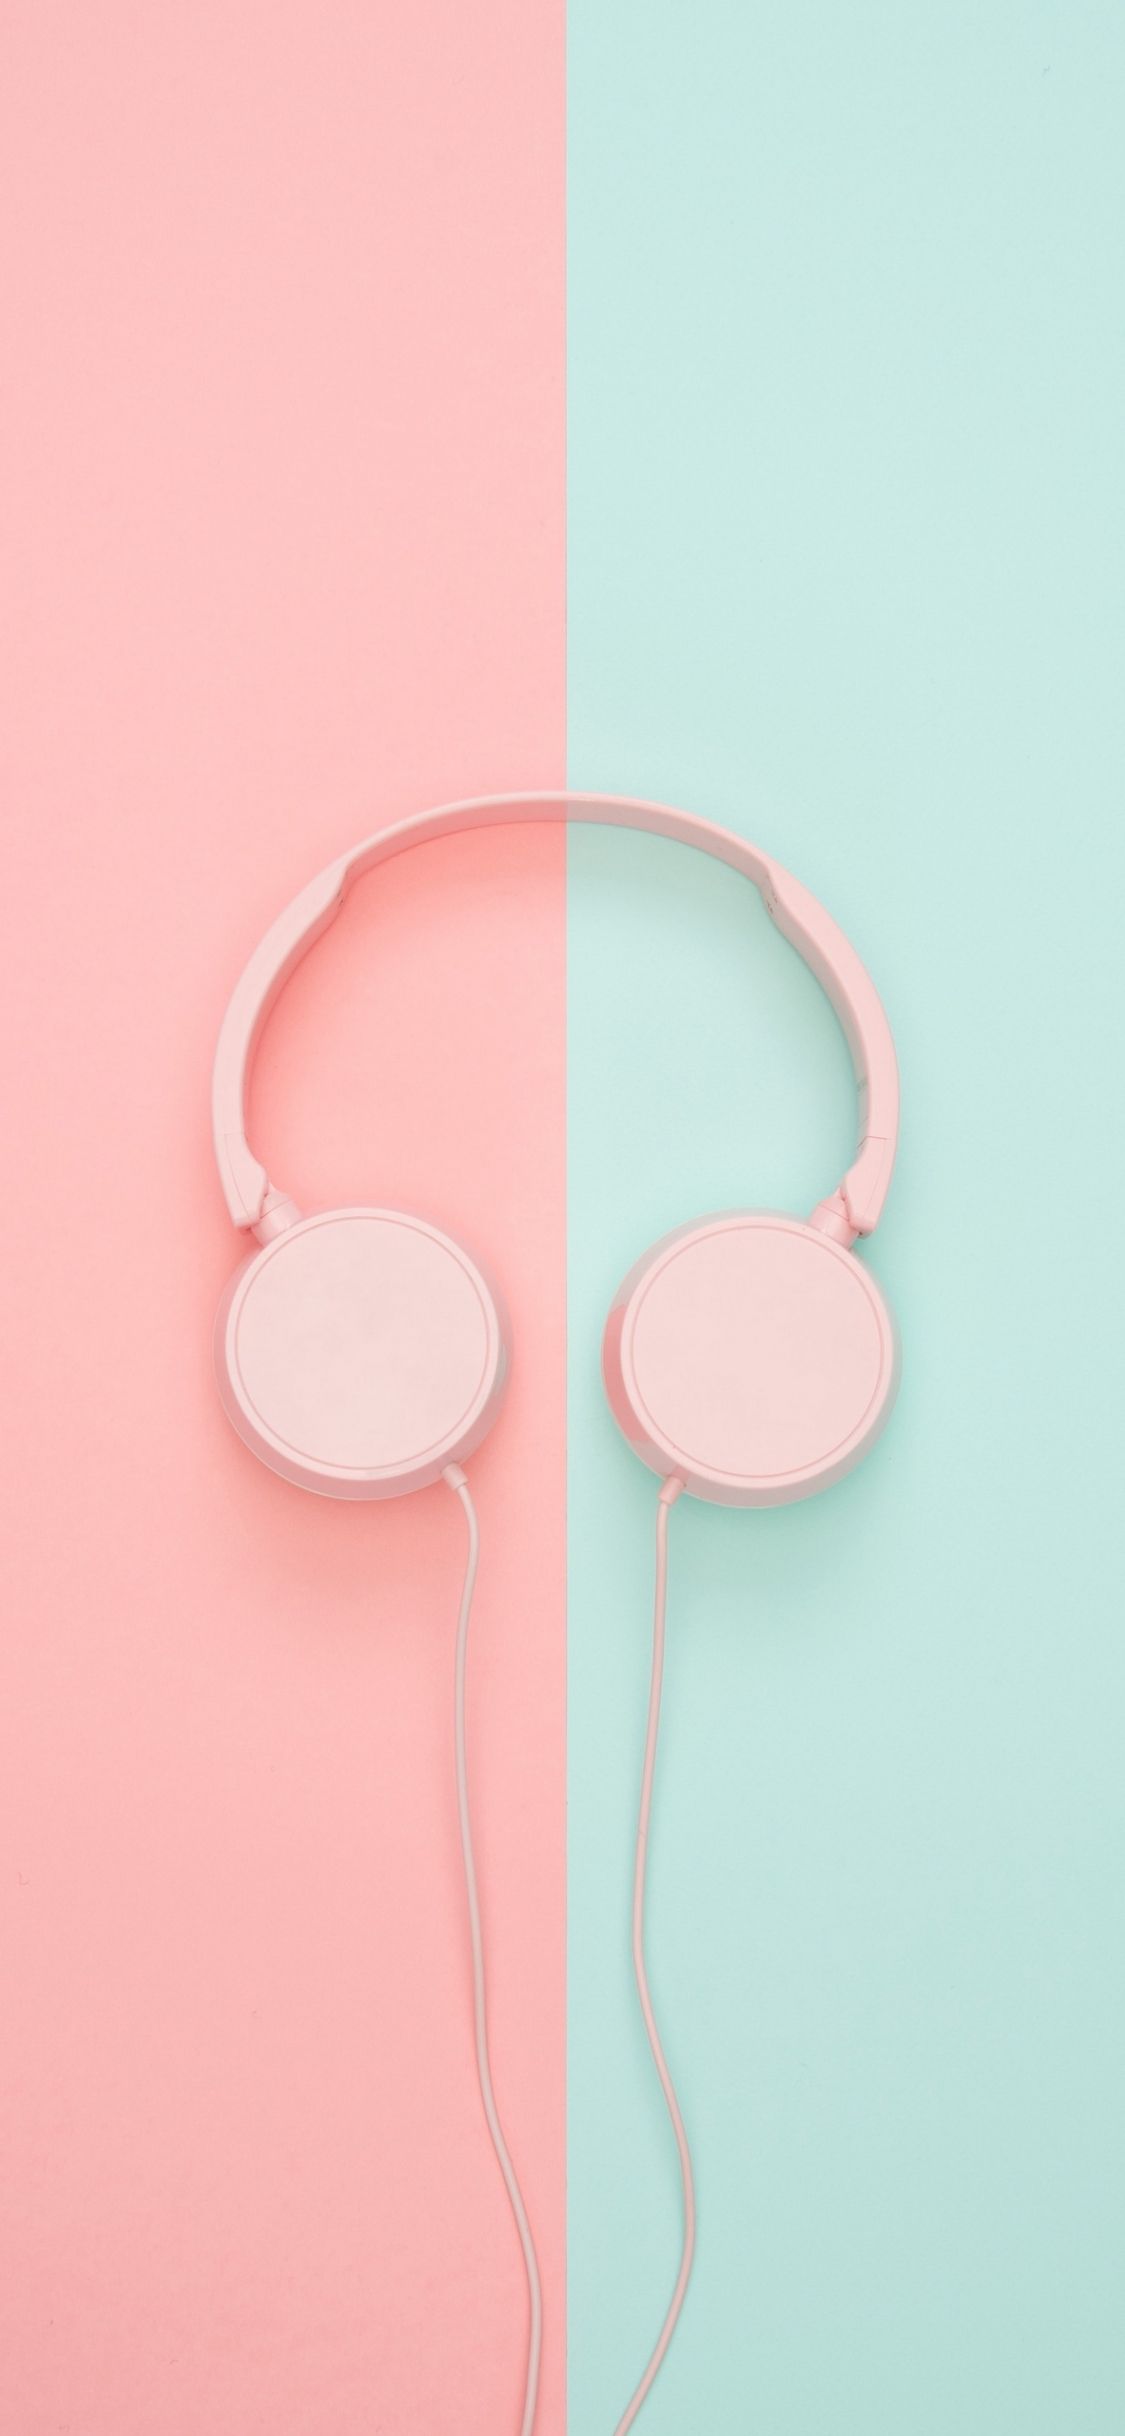 Free download Download wallpaper 1440x2560 headphones minimalism